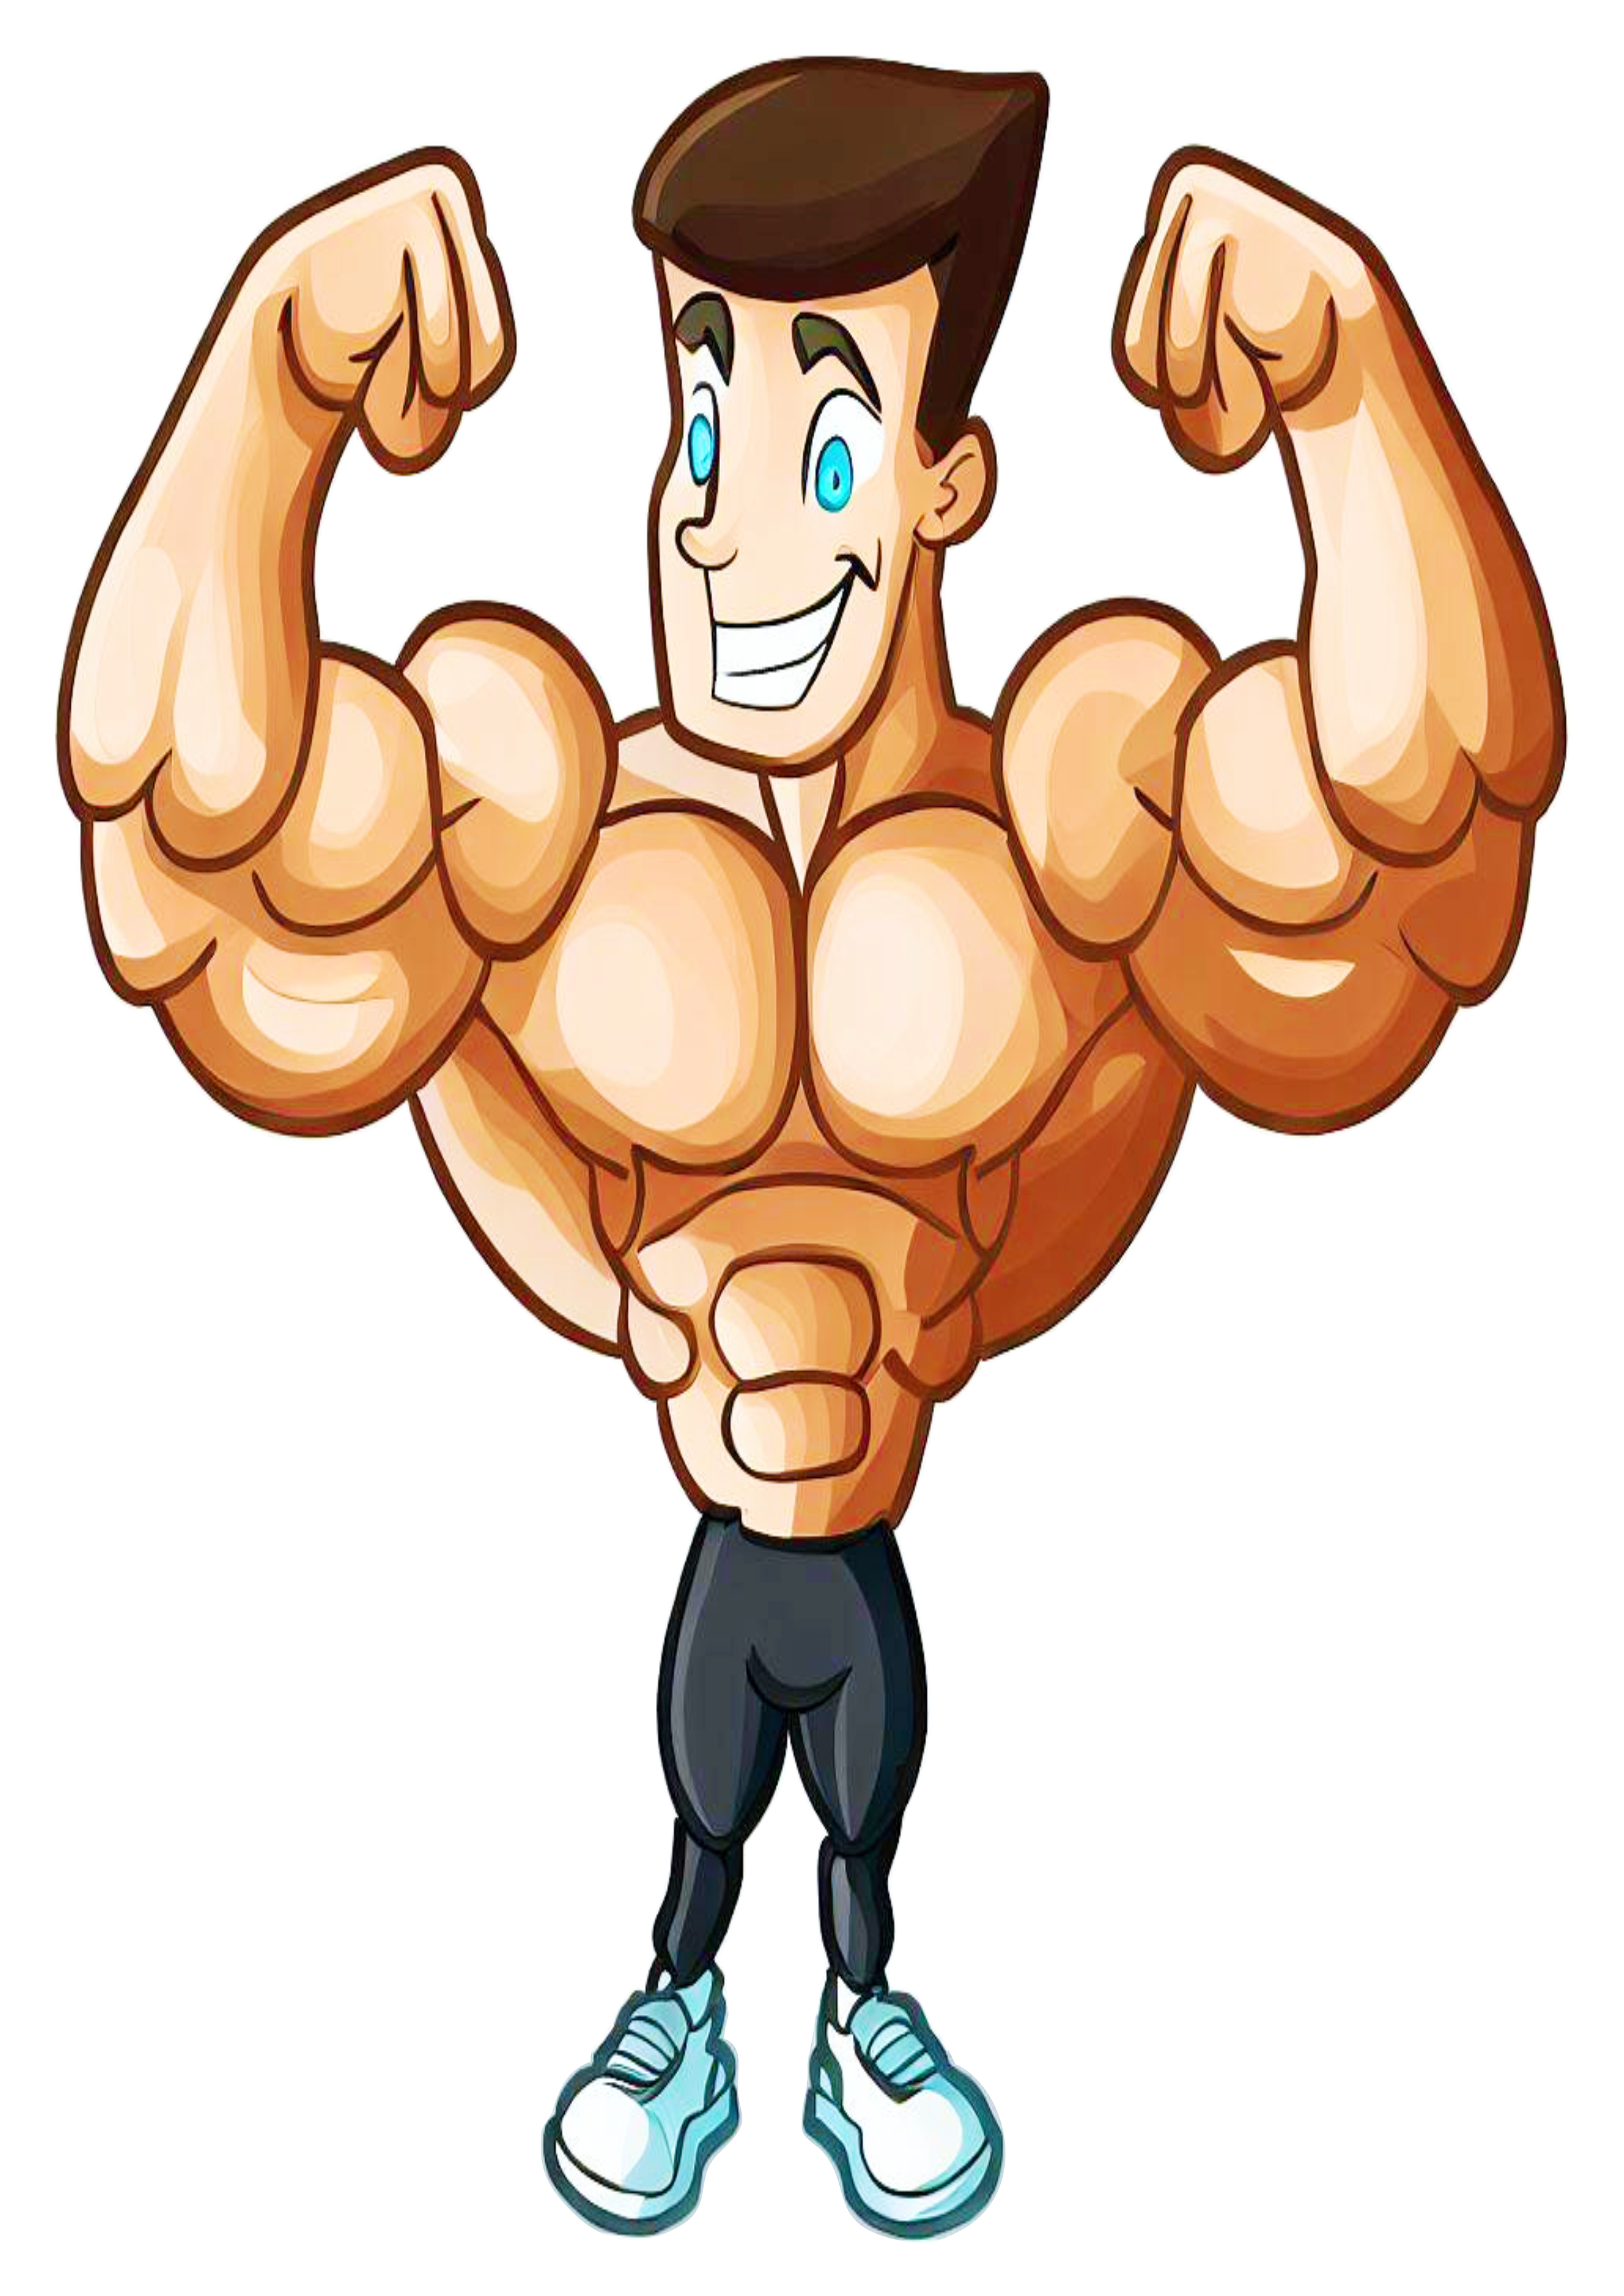 Homem musculoso maromba desenho fortão treino pesado fisiculturista bruto trincado duplo bíceps de frente png